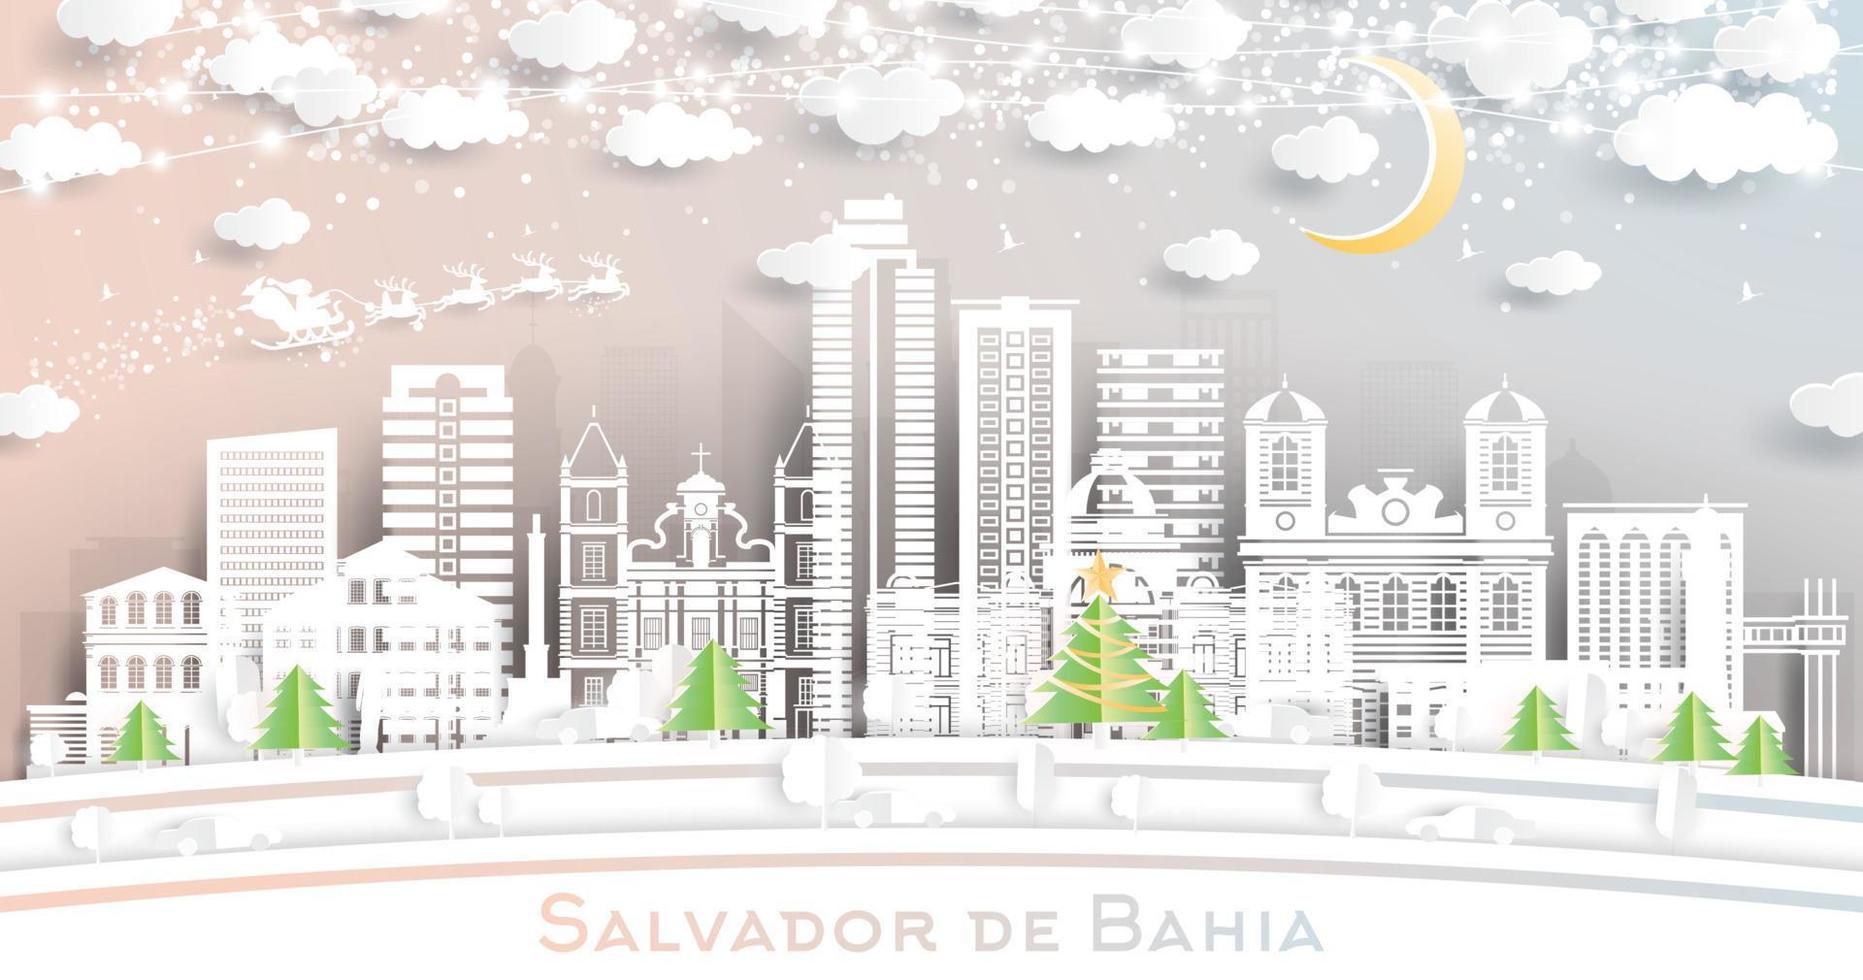 Salvador de Bahia Brazilië stad horizon in papier besnoeiing stijl met sneeuwvlokken, maan en neon guirlande. vector